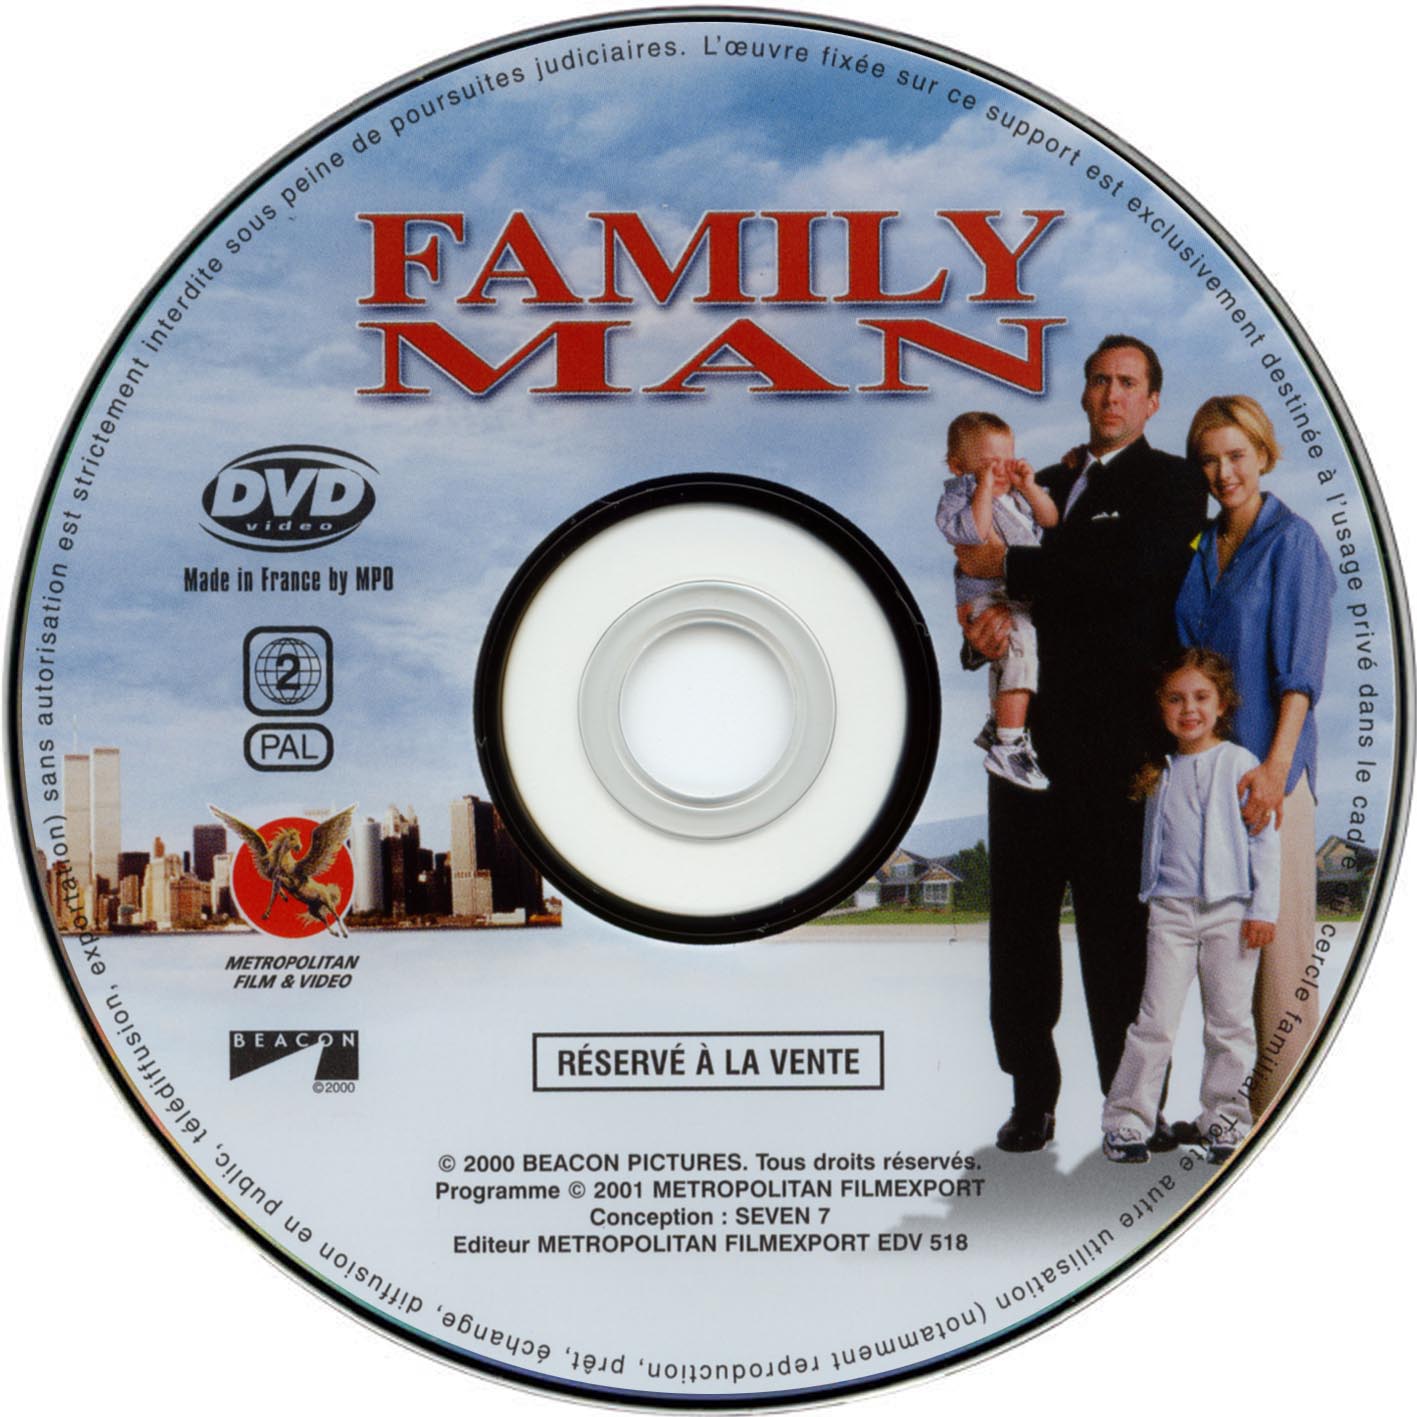 Family man (v2) (DVD)